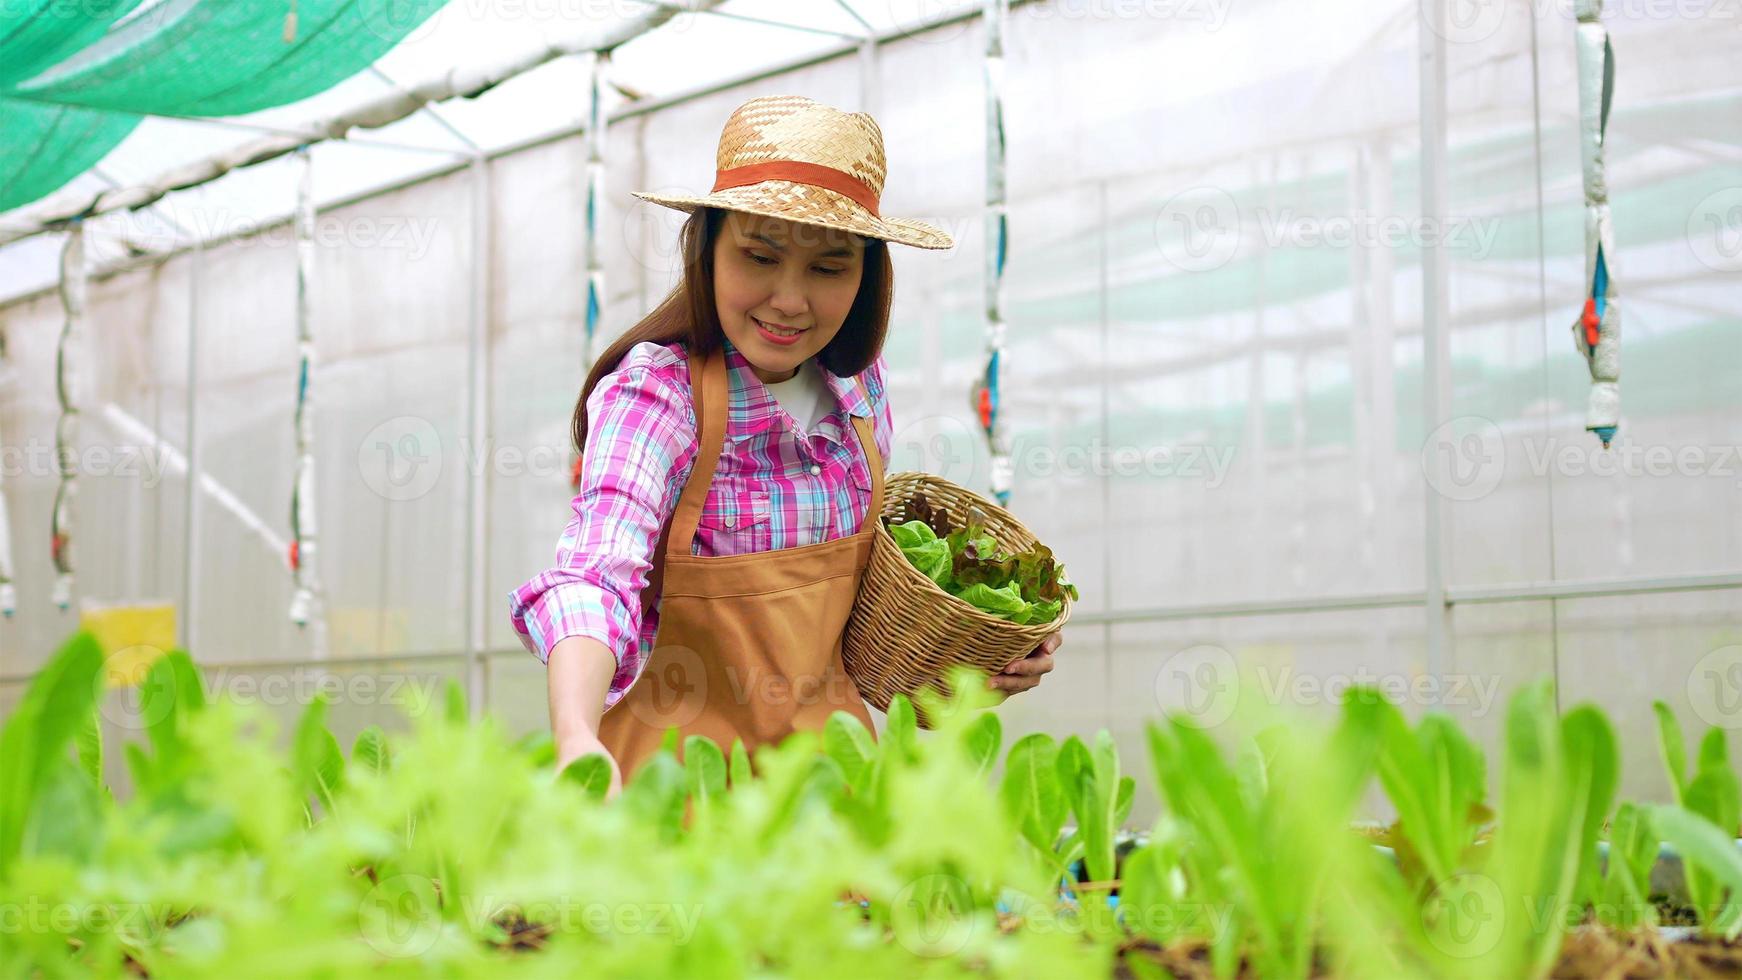 portret van een gelukkige aziatische vrouw die een mand met verse groentesalade vasthoudt in een biologische boerderij in een kastuin, concept van biologische landbouw voor gezondheid, veganistisch eten en kleine bedrijven. foto